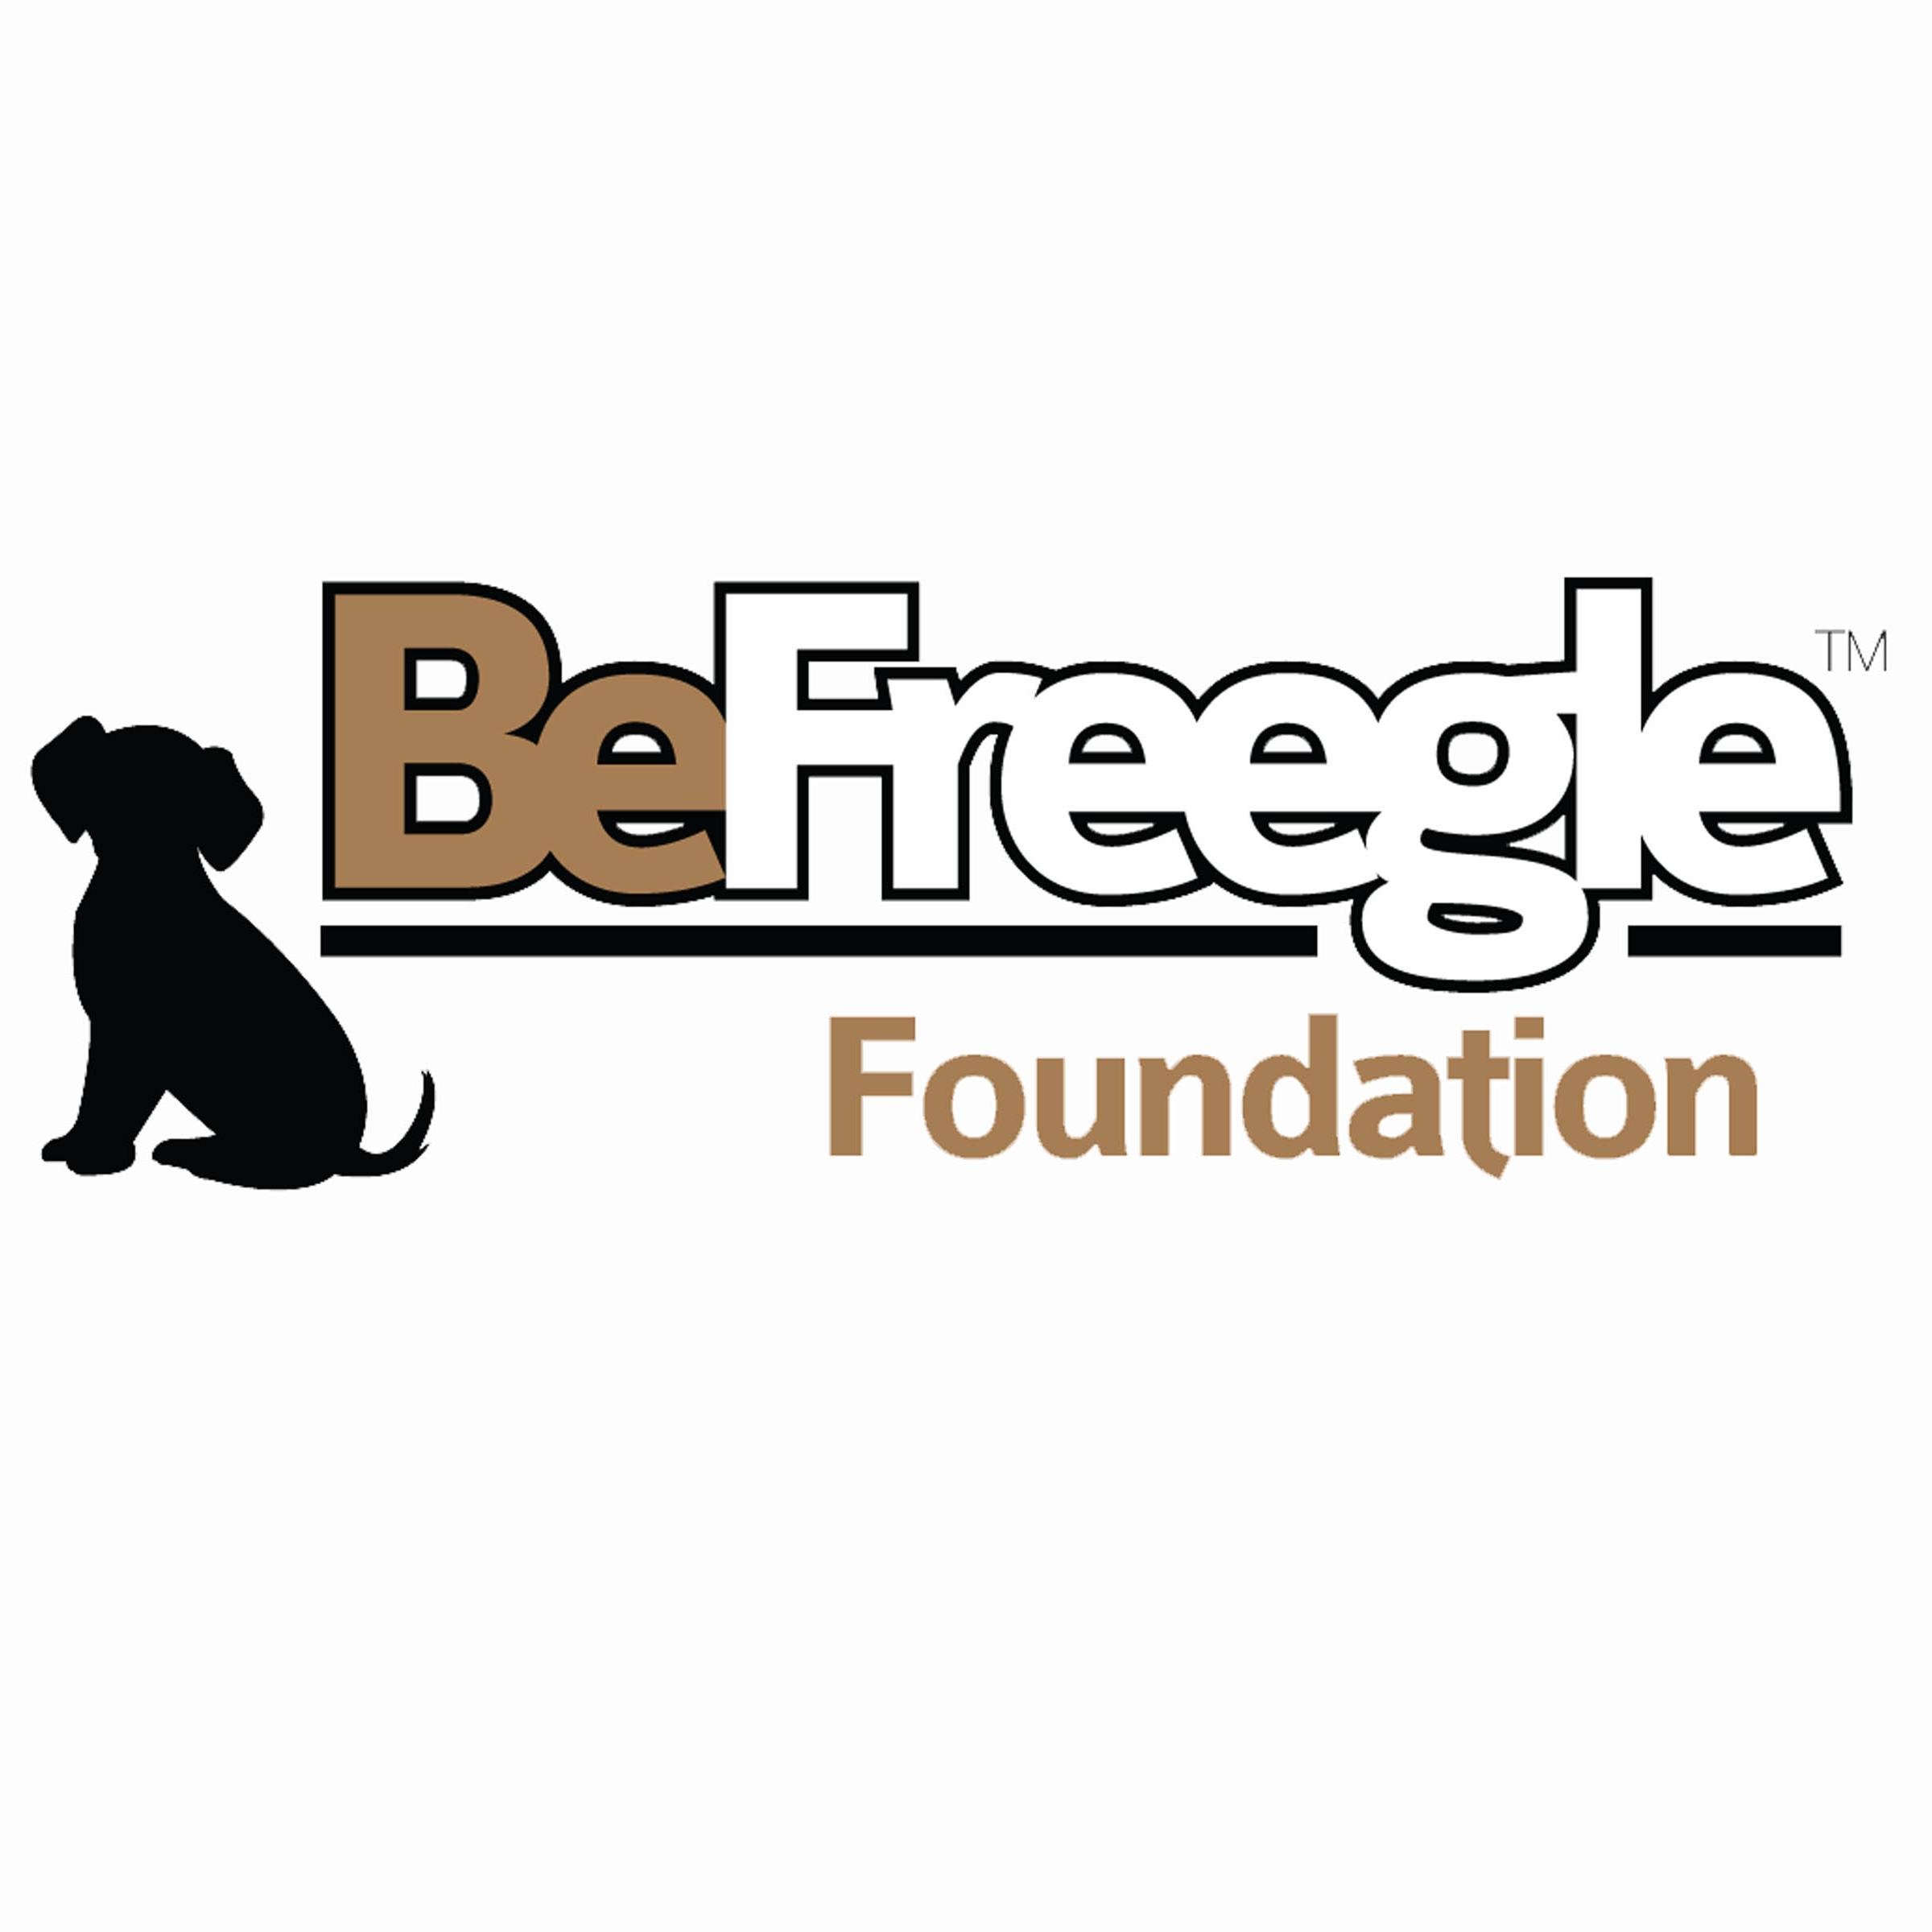 BeFreegle Foundation